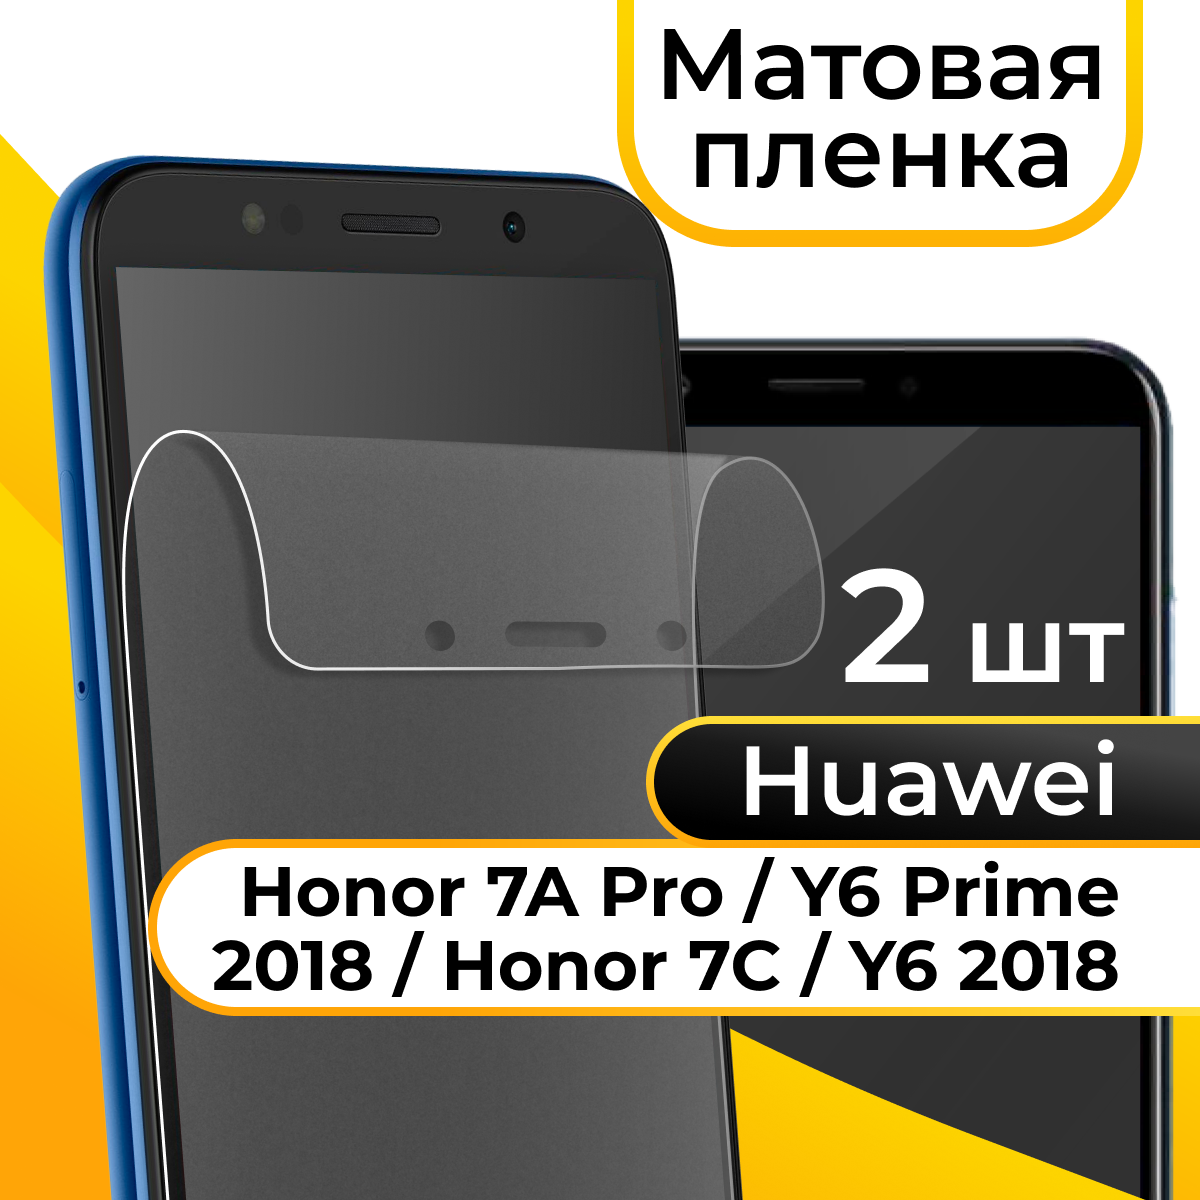 Матовая пленка для смартфона Honor 7A Pro 7C и Huawei Y6 Prime 2018 Y6 2018 / Защитная пленка на телефон Хонор 7А Про 7С и Хуавей У6 Прайм У6 2018